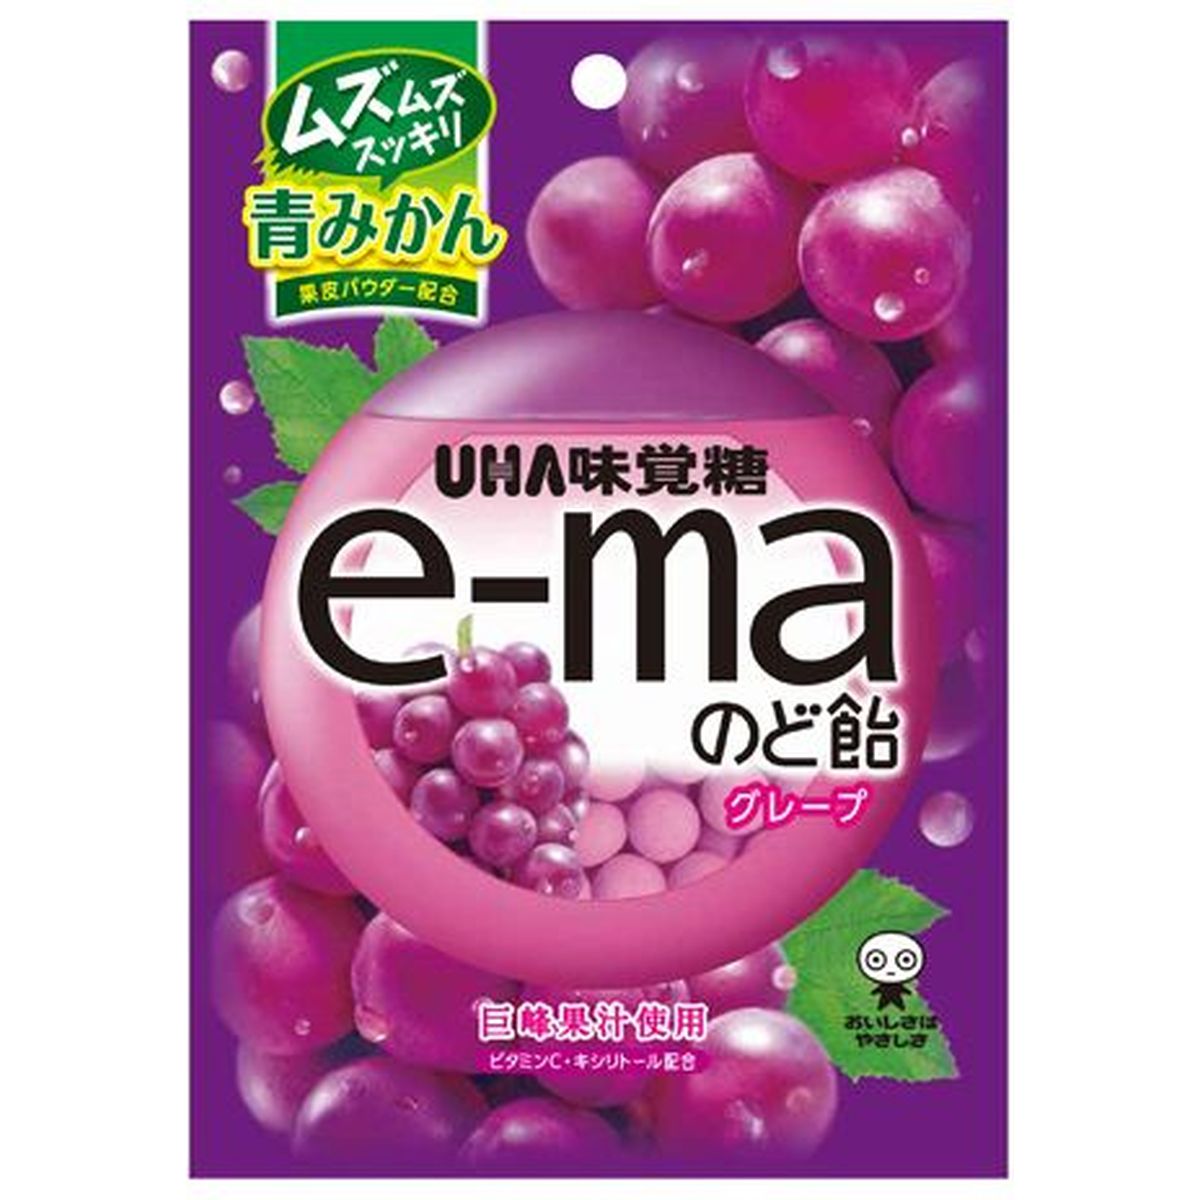 【6個入リ】UHA味覚糖 ピピン e-maノド飴 袋 グレープ 50g